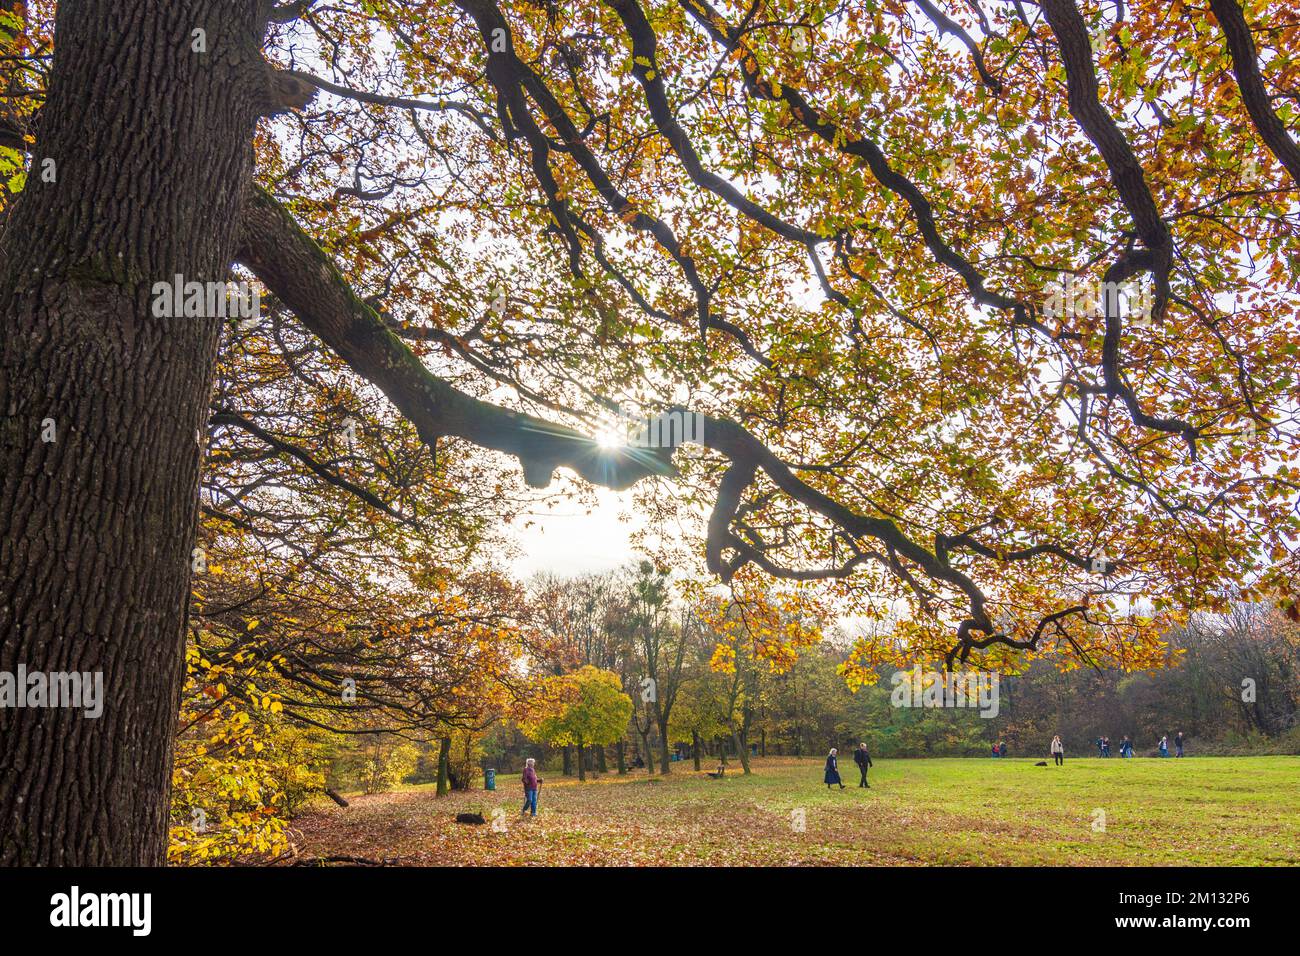 Wien, knorrige Eichen, Herbstfarben auf der Wienerwald Kreuzeichenwiese, Menschen im Jahr 16. Ottakring, Österreich Stockfoto